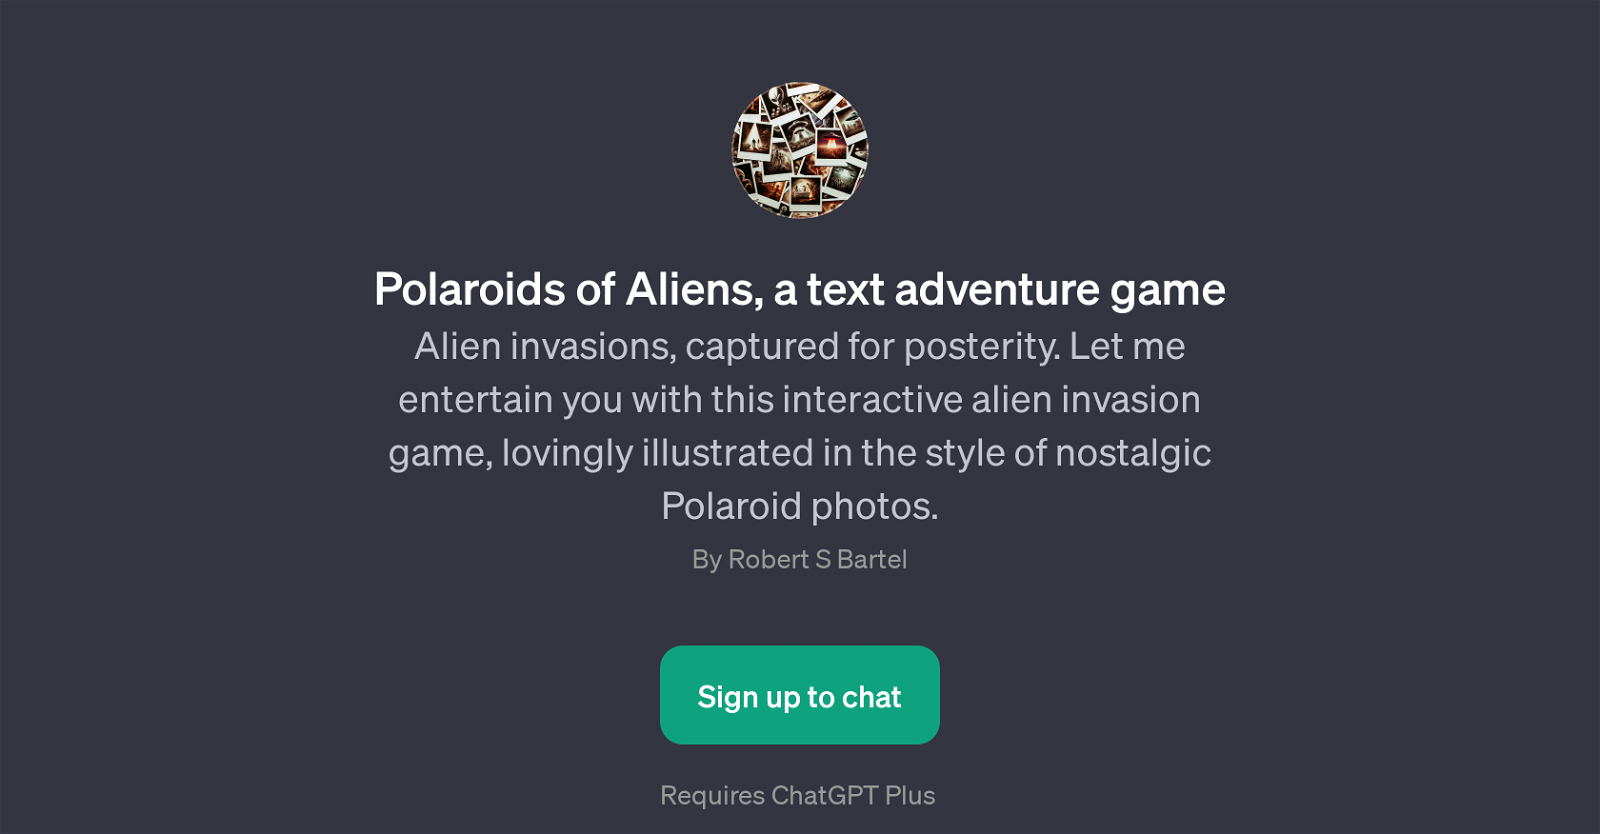 Polaroids of Aliens website